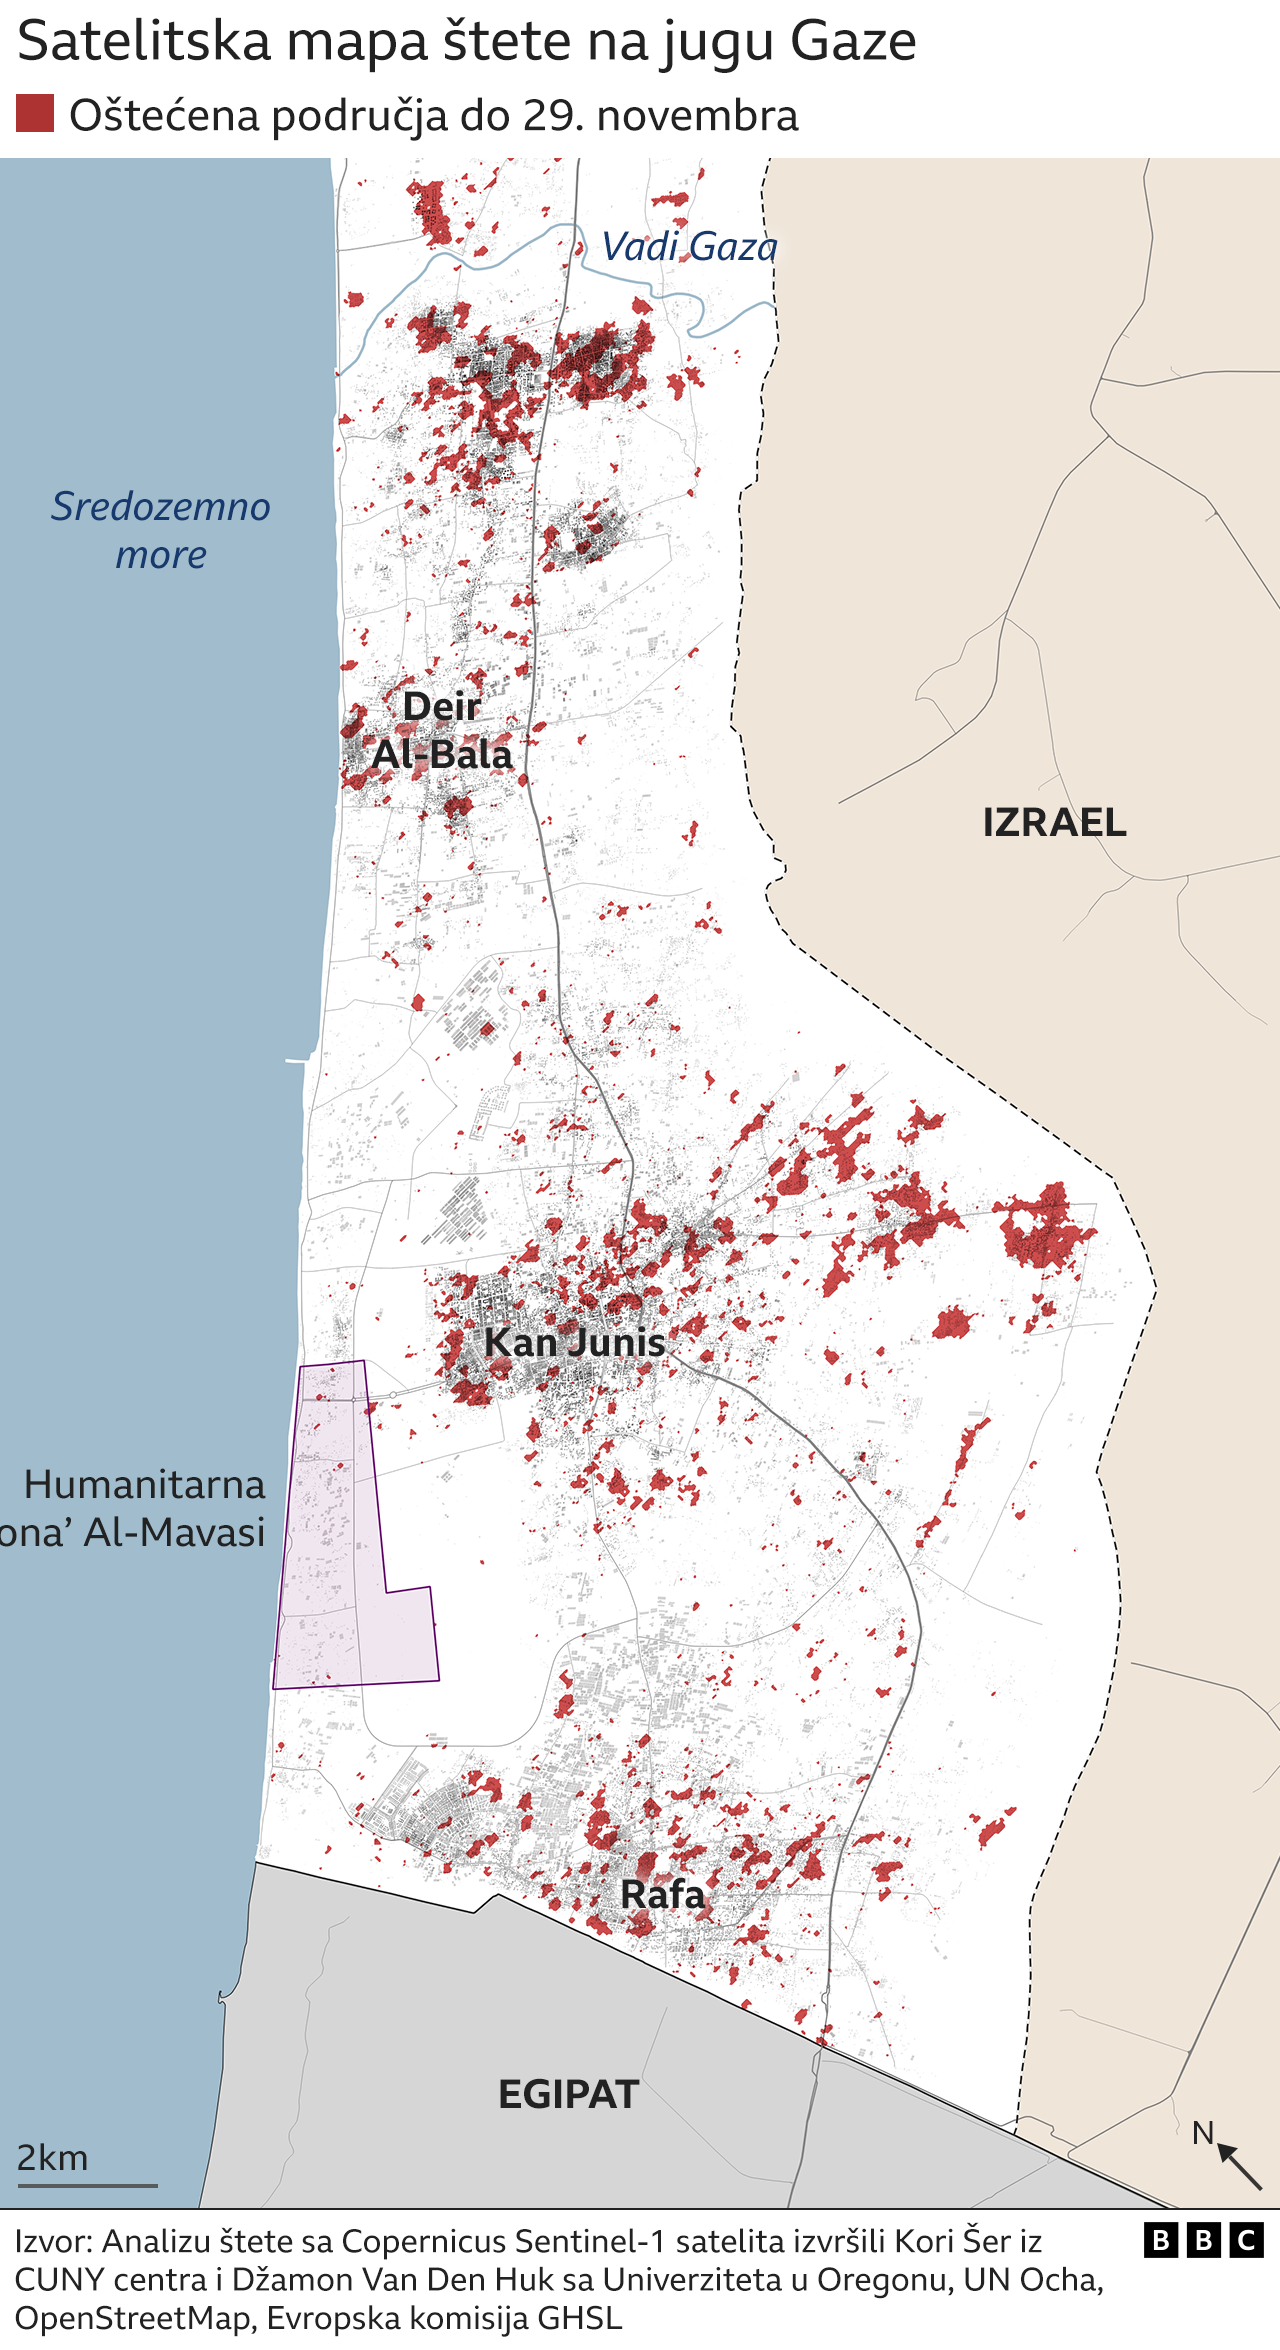 uništenja na jugu Gaze